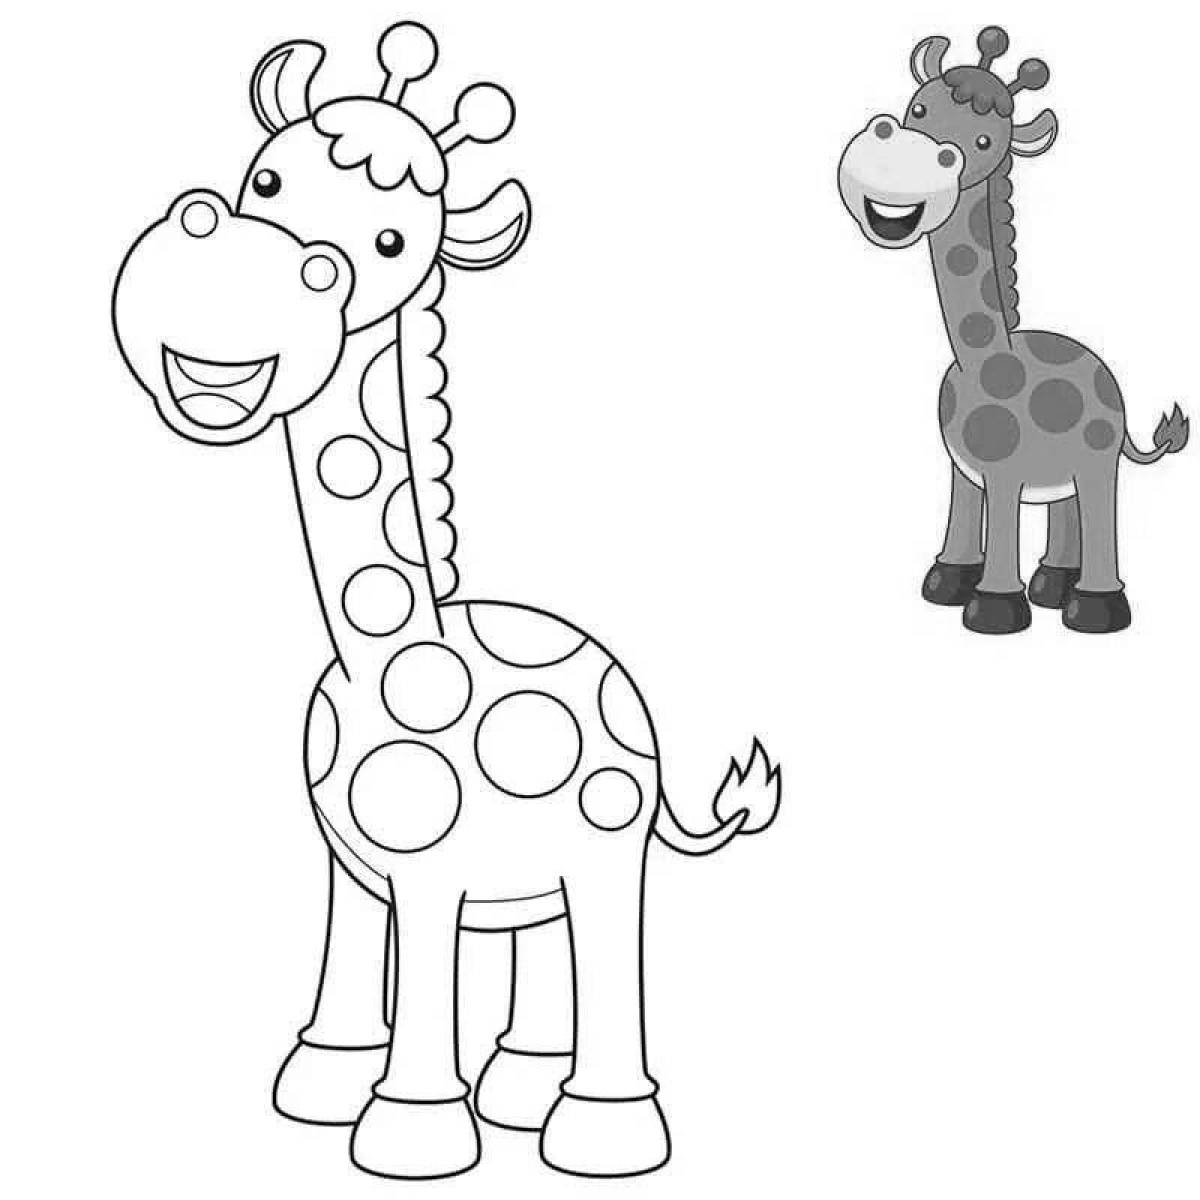 Fabulous giraffe coloring page